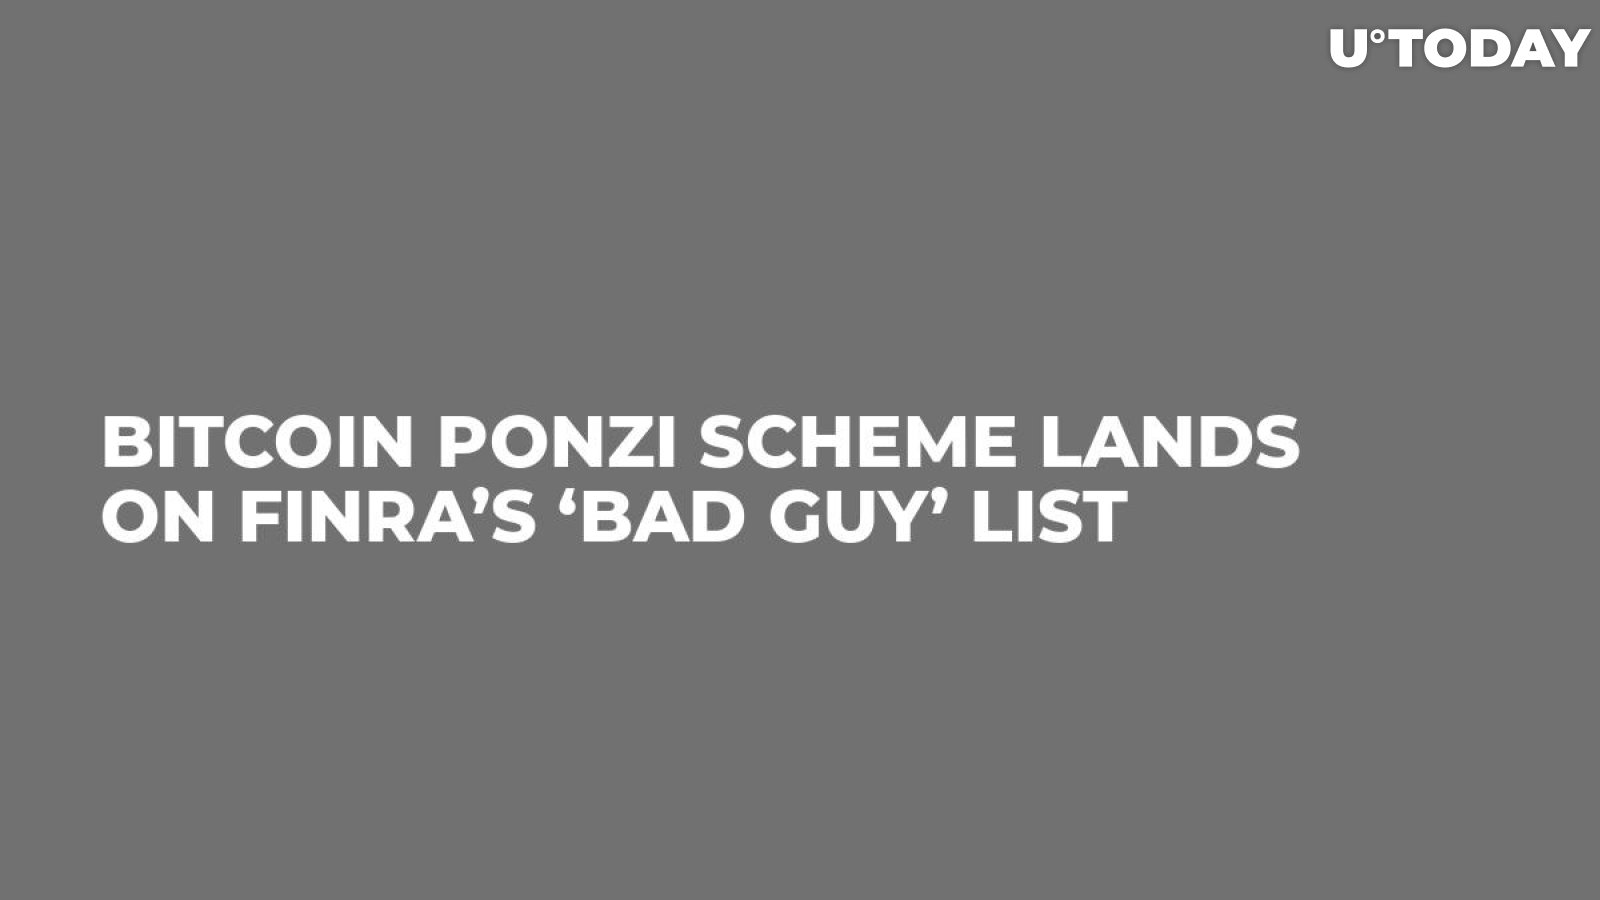 Bitcoin Ponzi Scheme Lands on FINRA’s ‘Bad Guy’ List